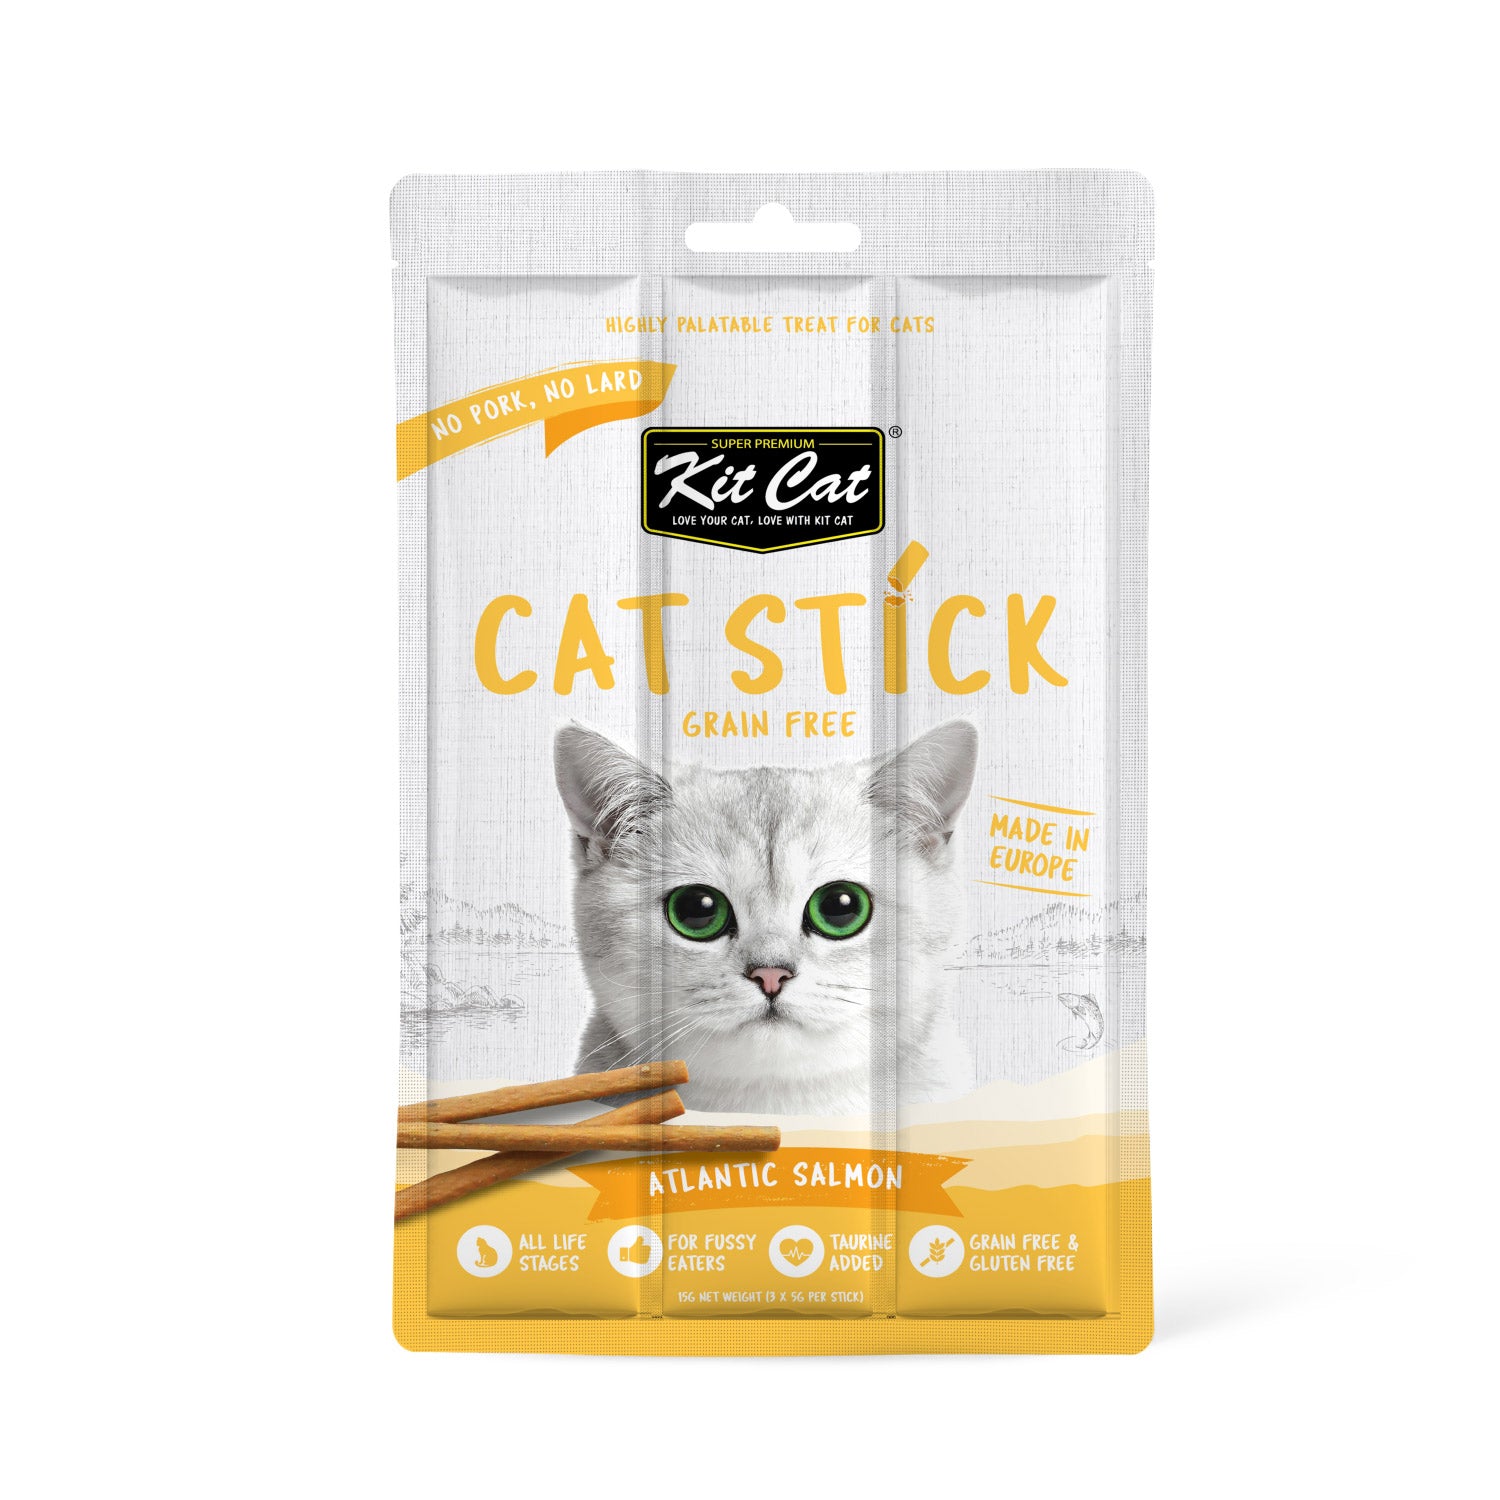 KIT CAT Grain-Free Cat Stick 15g (Various Flavours)